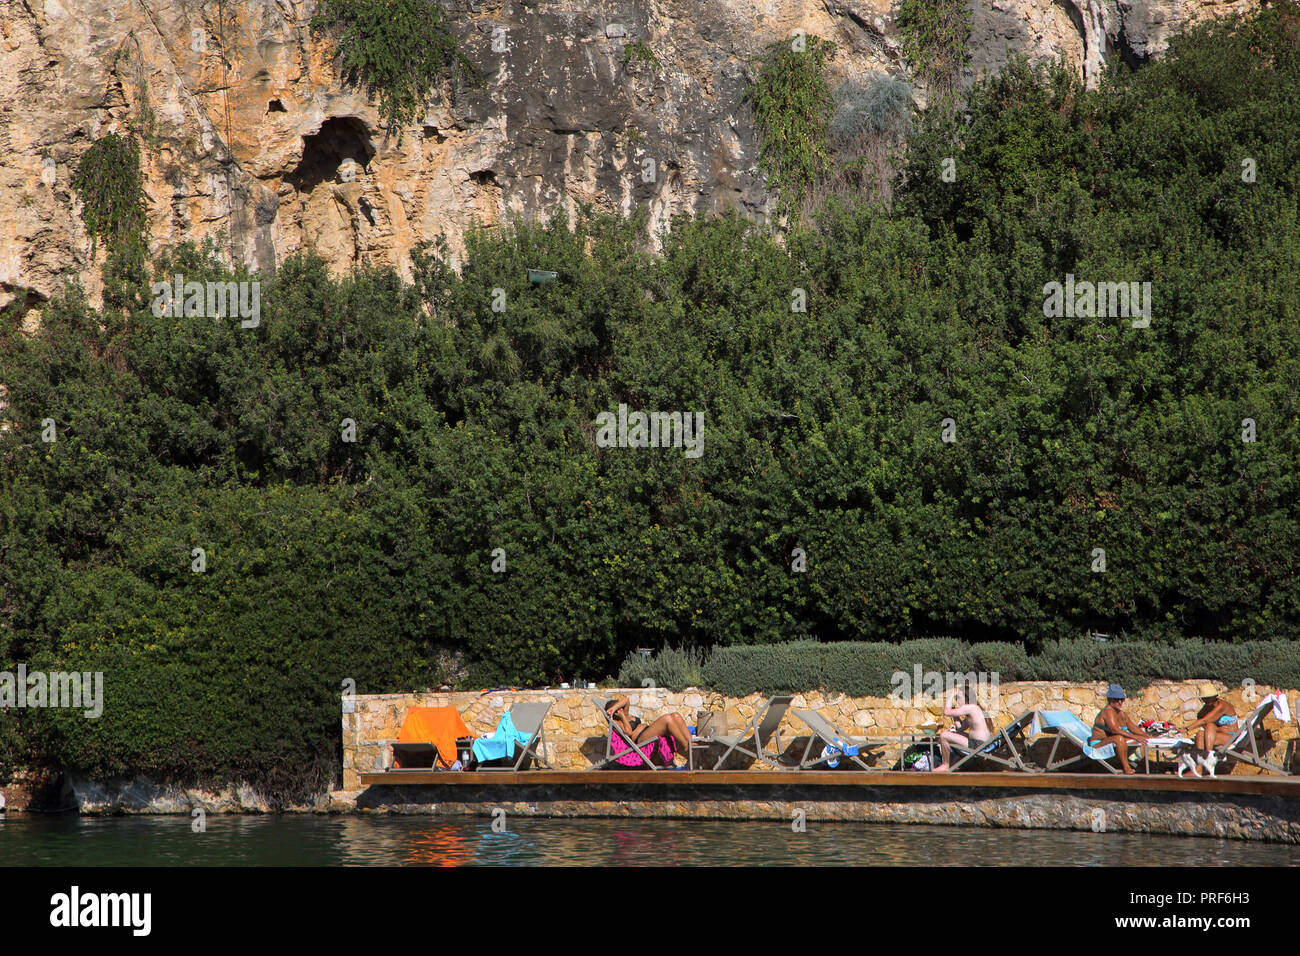 Vouliagmeni Atene Grecia turisti che prendono il sole sul lago Vouliagmeni una Spa naturale - una volta era una caverna, ma il tetto della grotta cadde in seguito all'erosione da t Foto Stock